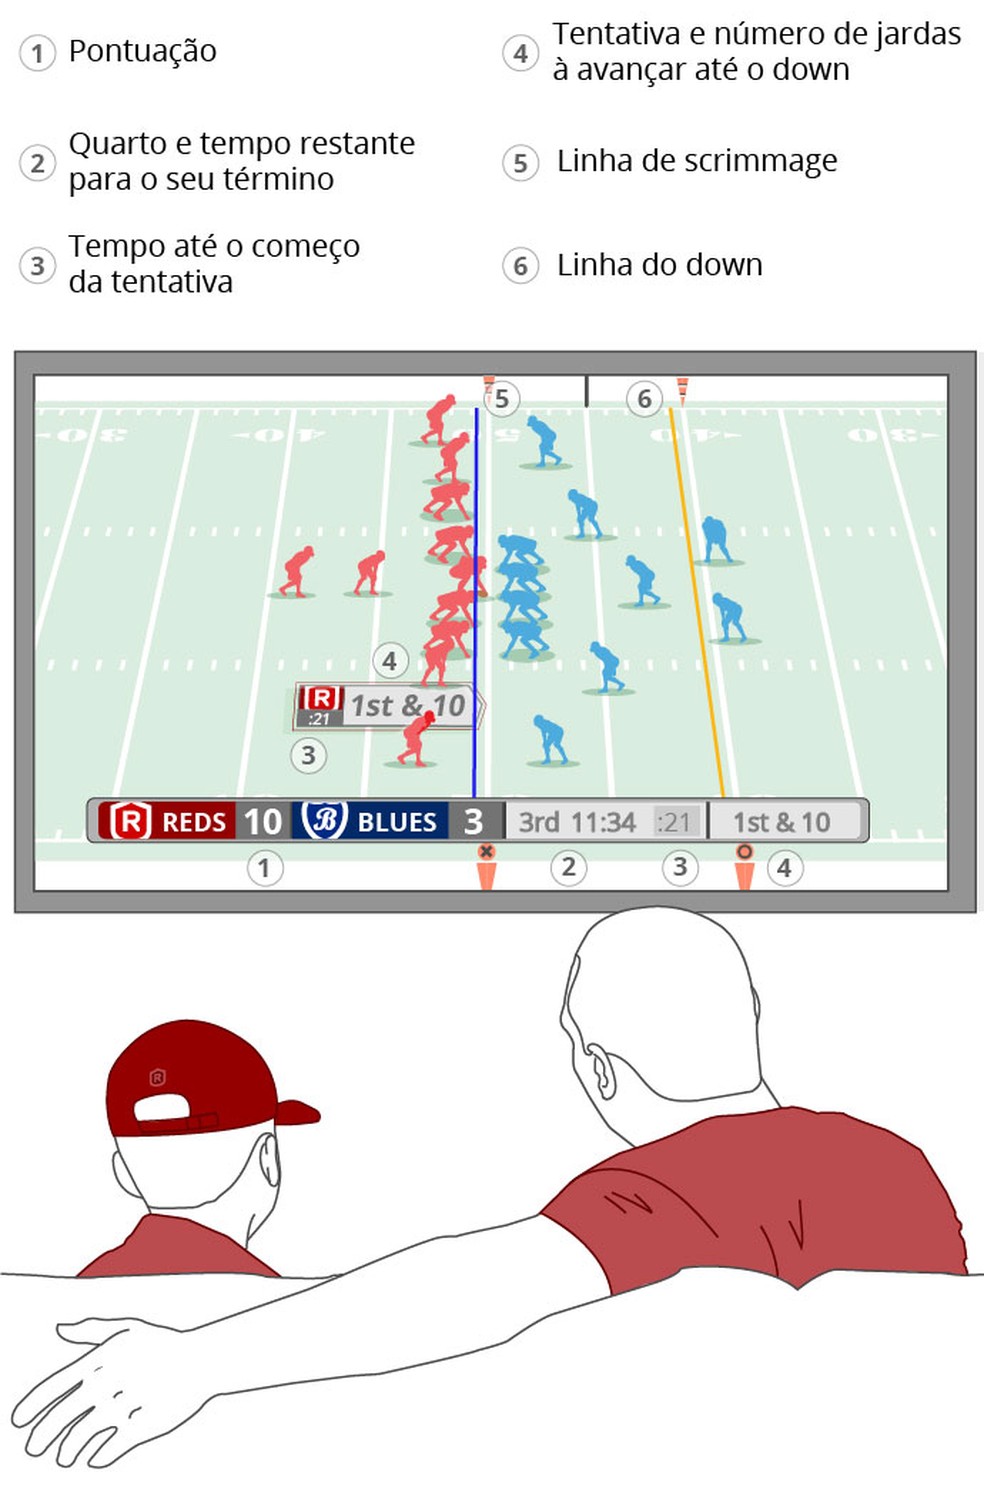 NFL: Entenda as regras de um jogo de futebol americano - Lance!